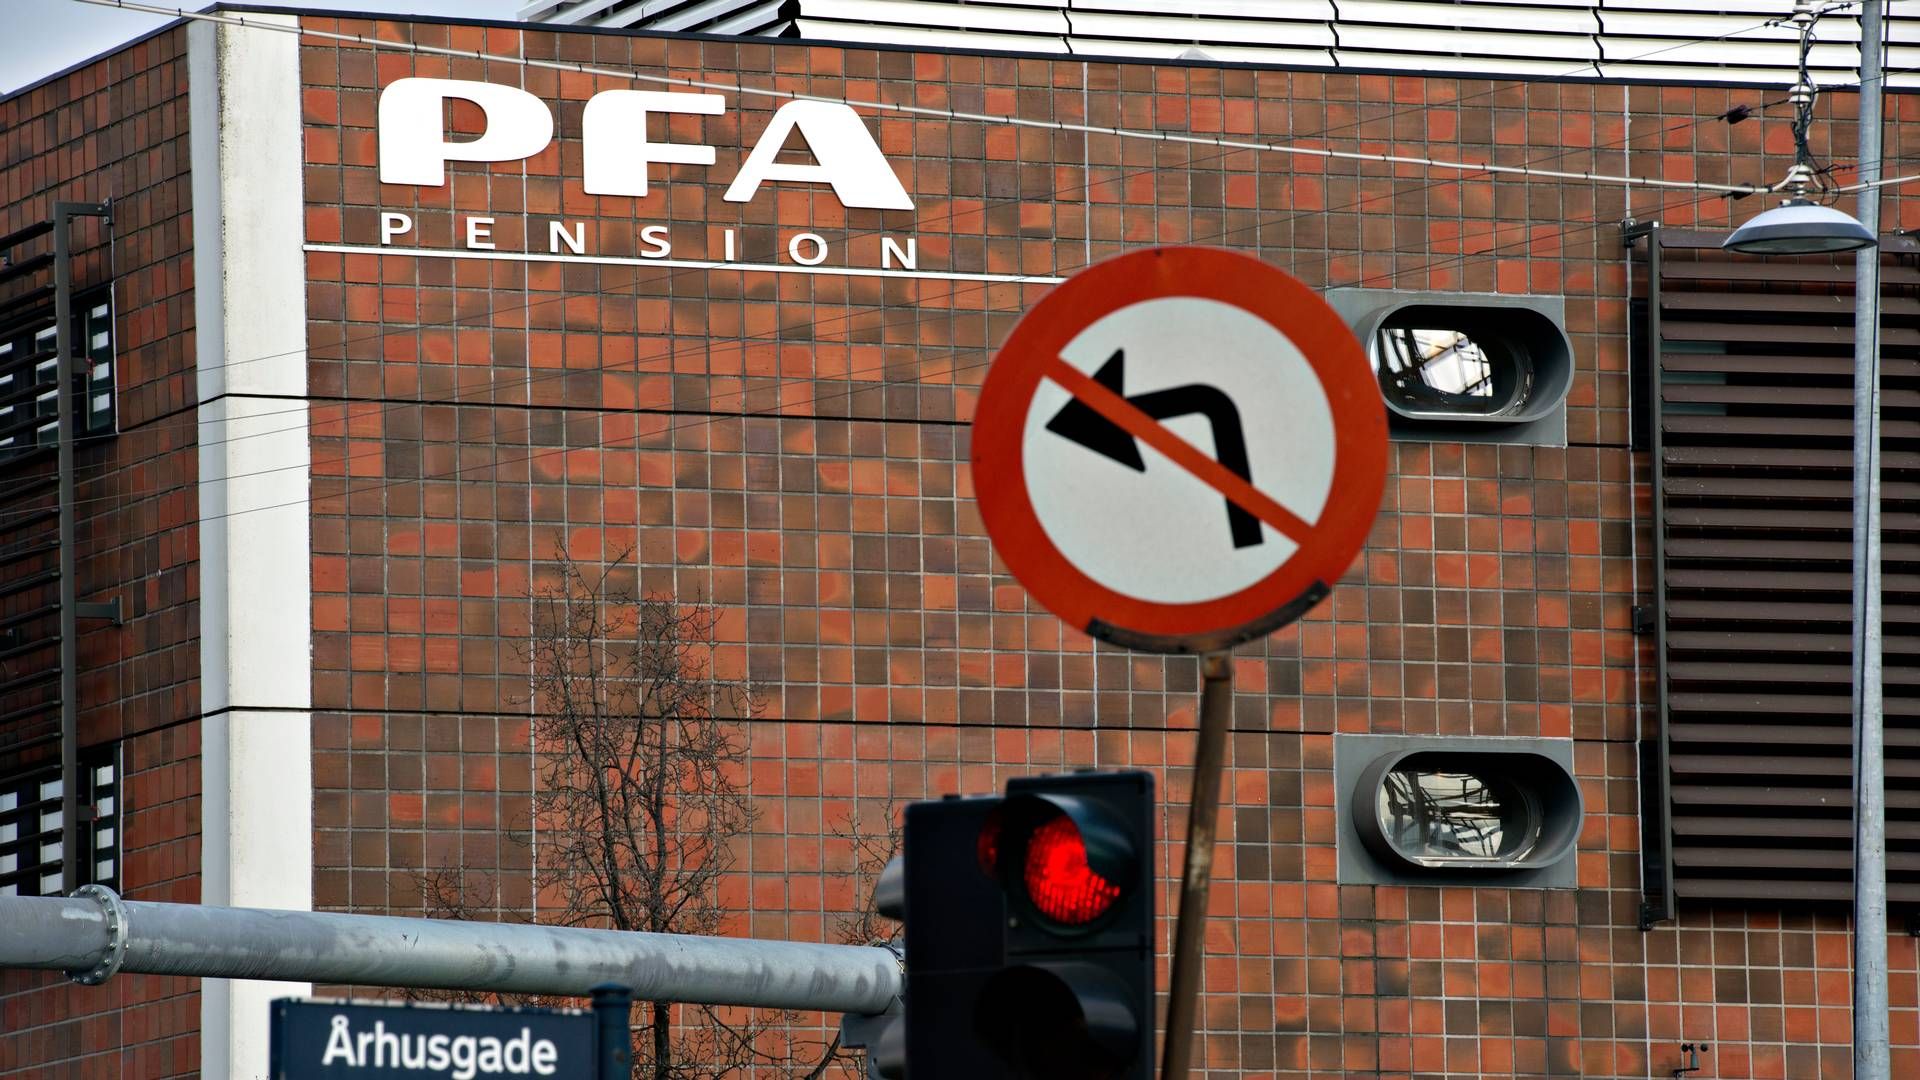 PFA er landets største kommercielle pensionsselskab med omkring 1,3 mio. kunder. | Foto: Lars Krabbe/Jyllands-Posten/Ritzau Scanpix